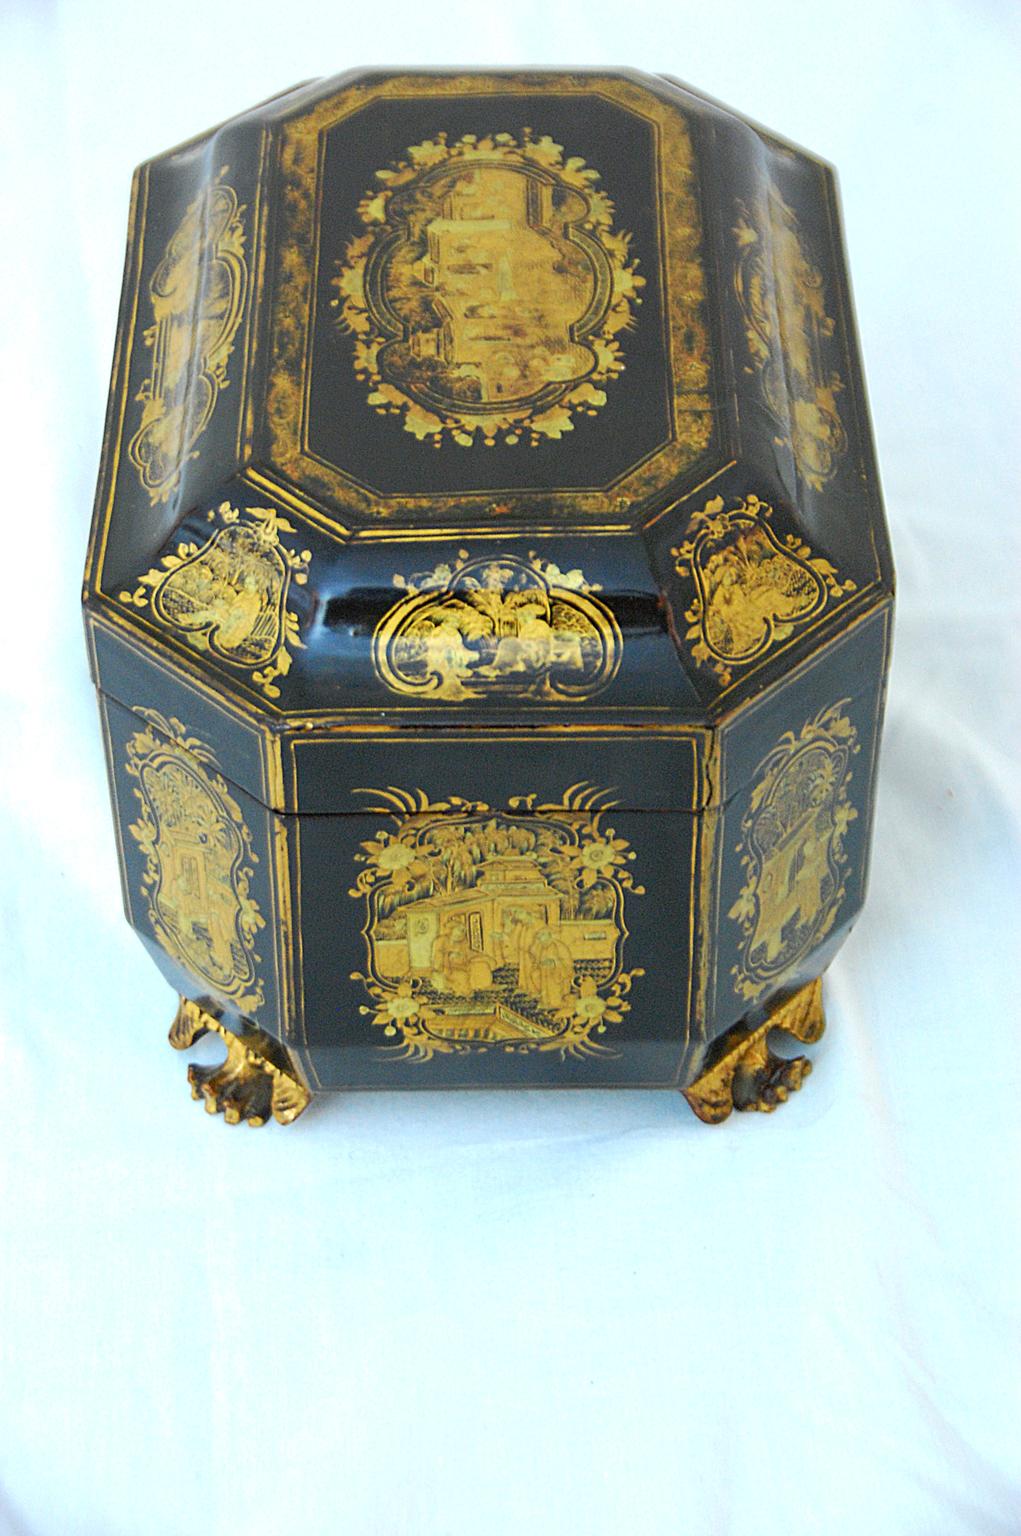 Verseuse à thé octogonale de chinoiserie, laquée et peinte à la main, de couleur noire avec des décorations dorées. L'intérieur comporte deux boîtes à thé en étain gravées à la main, chacune dotée d'un double couvercle pour conserver la fraîcheur du